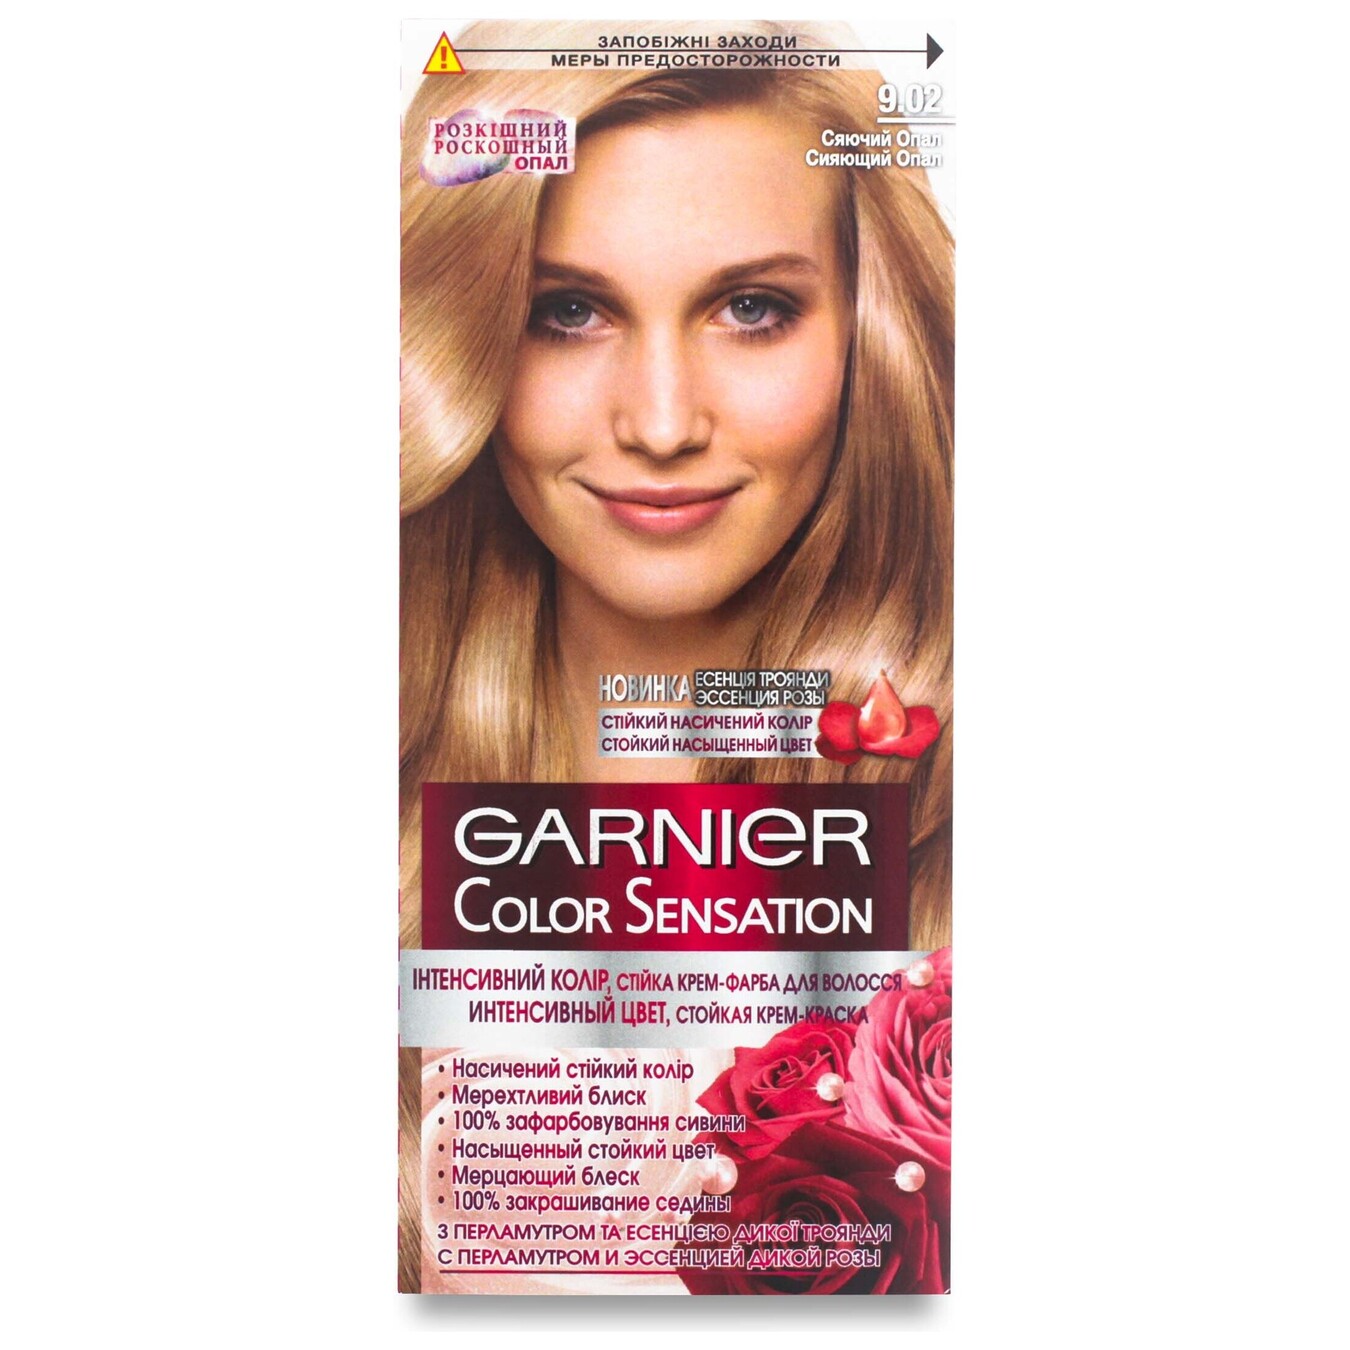 Крем-краска стойкая для волос Garnier Color Sensation Интенсивный цвет стойкий оттенок 9.02